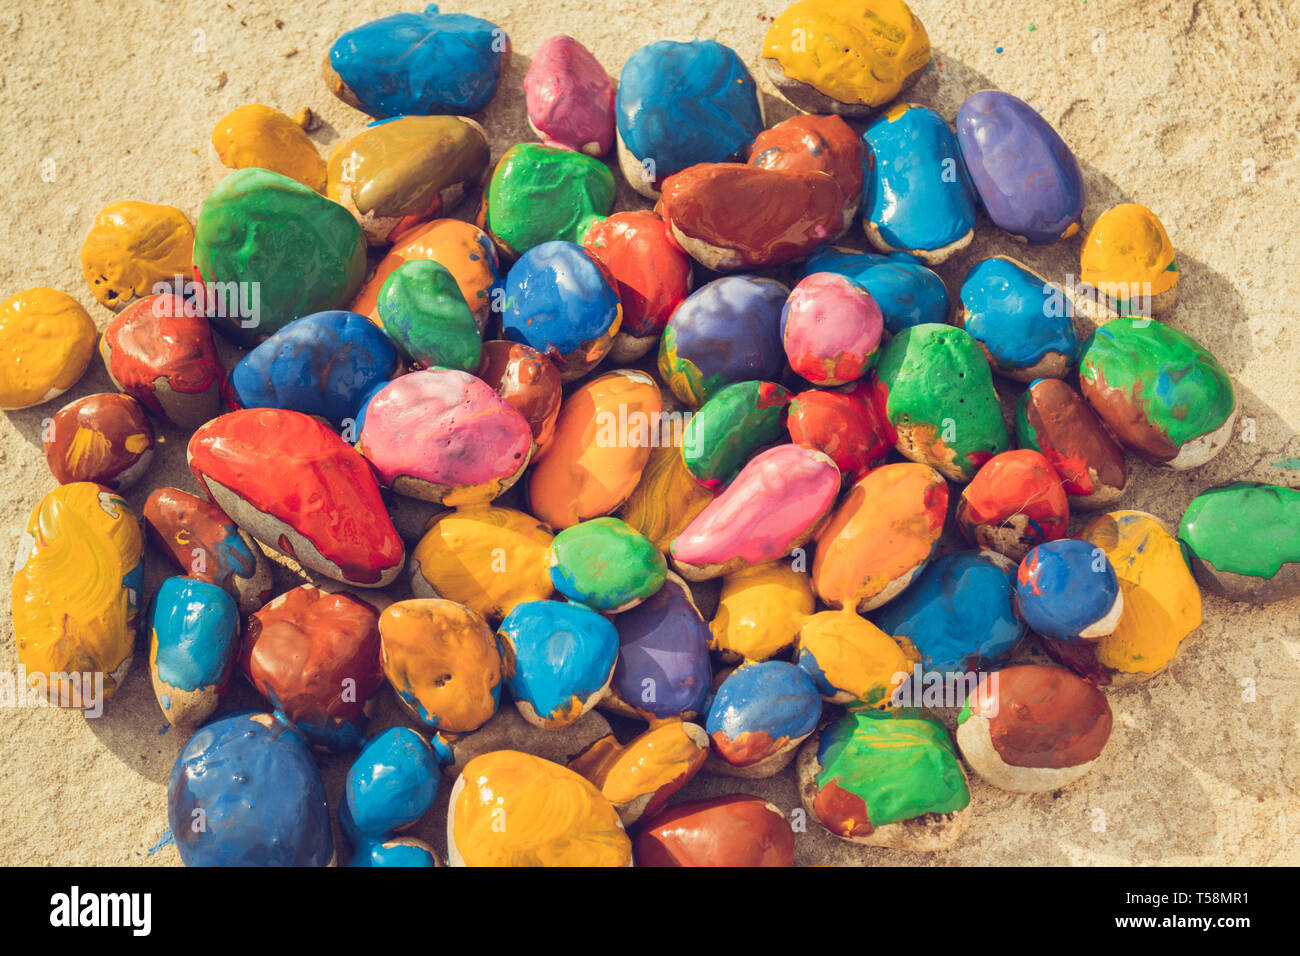 Pietre colorate di vernici colorate in diversi colori giacciono su una superficie piana. Close-up Foto Stock